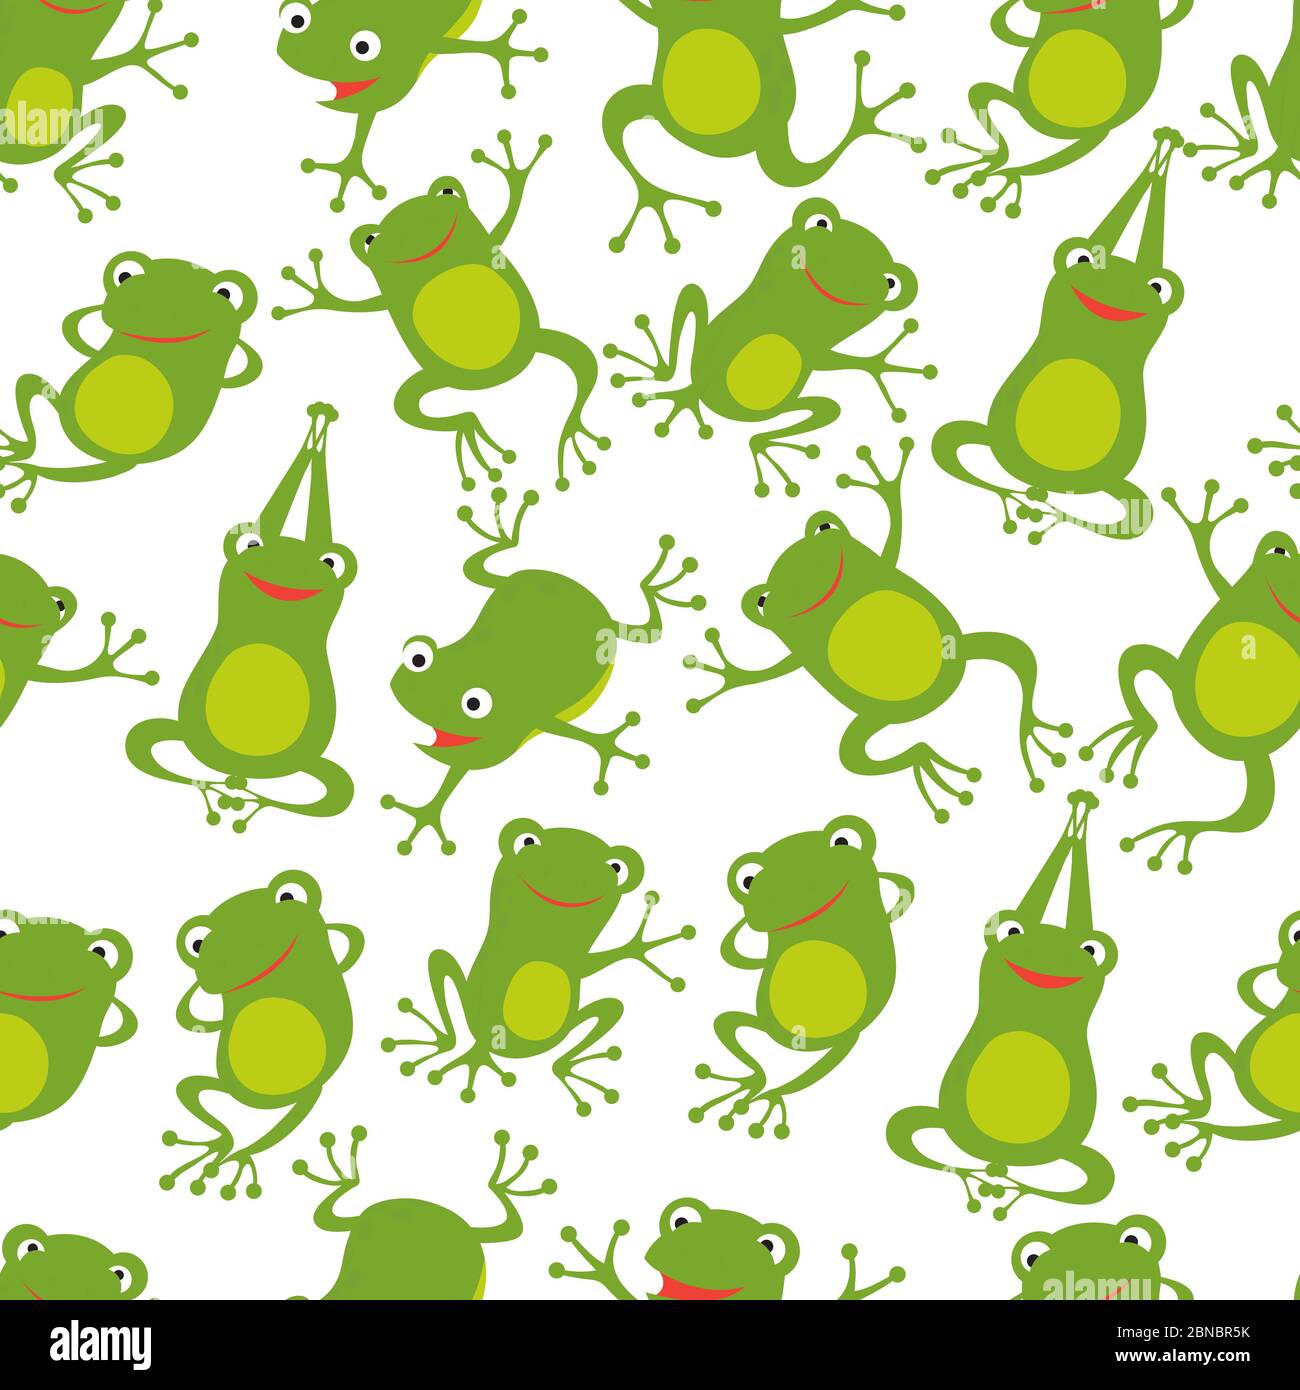 Stitch cute frog HD wallpaper  Peakpx